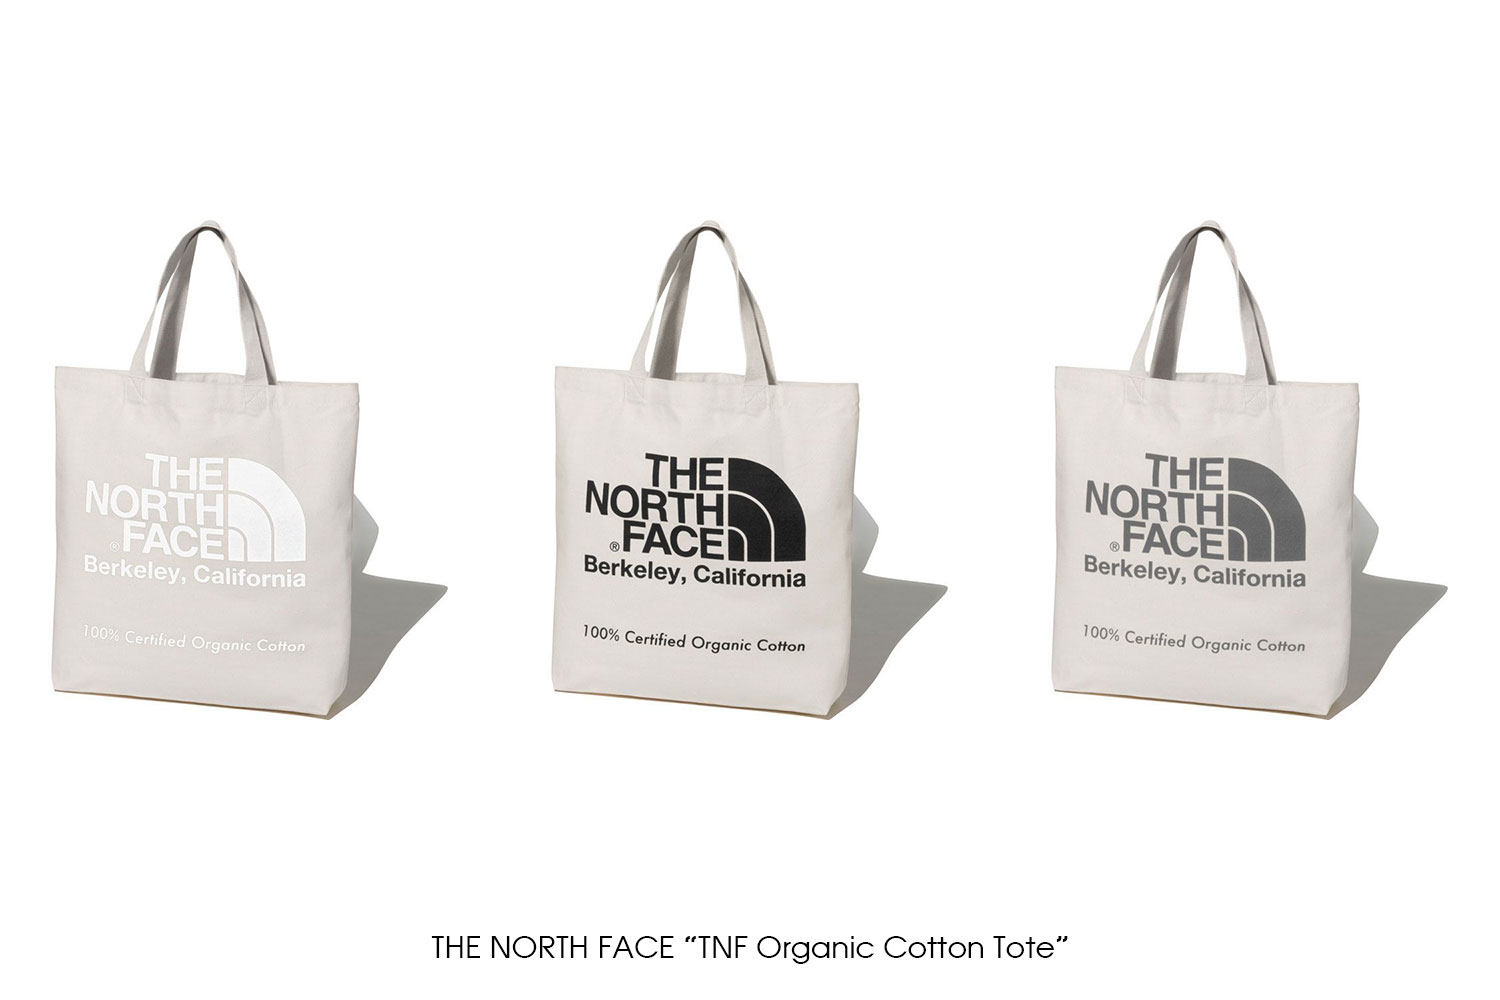 THE NORTH FACE "TNF Organic Cotton Tote"